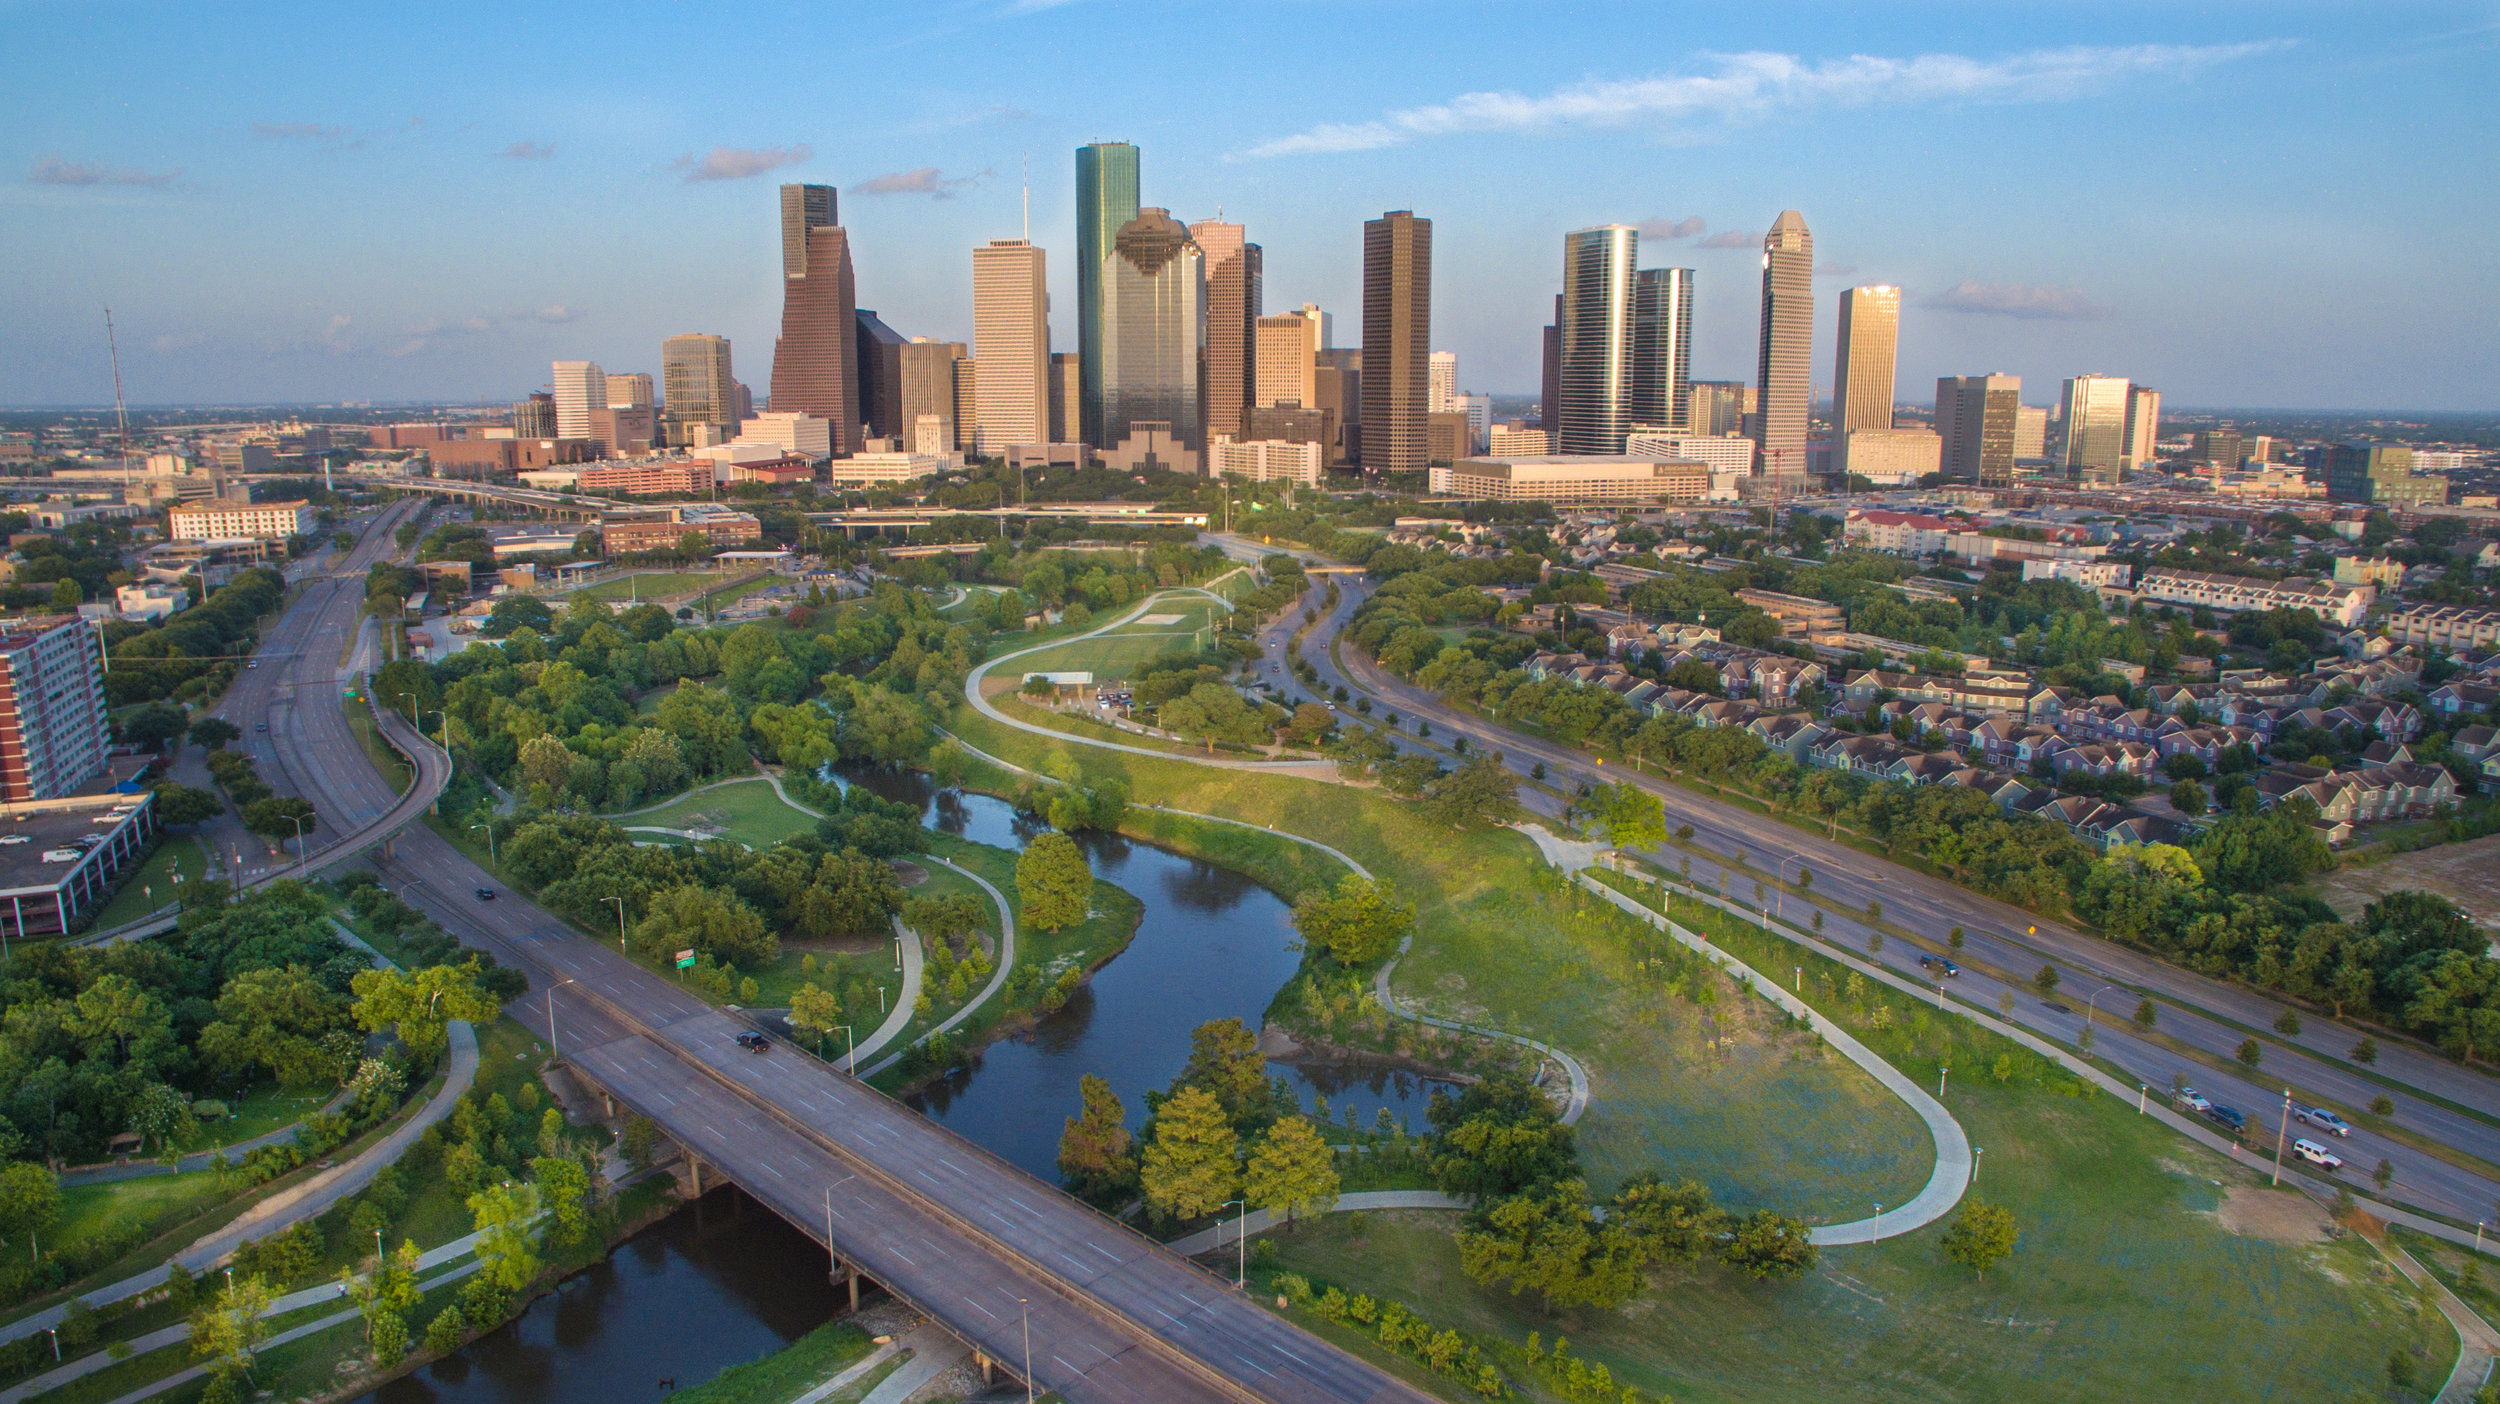 Houston Real Estate Market